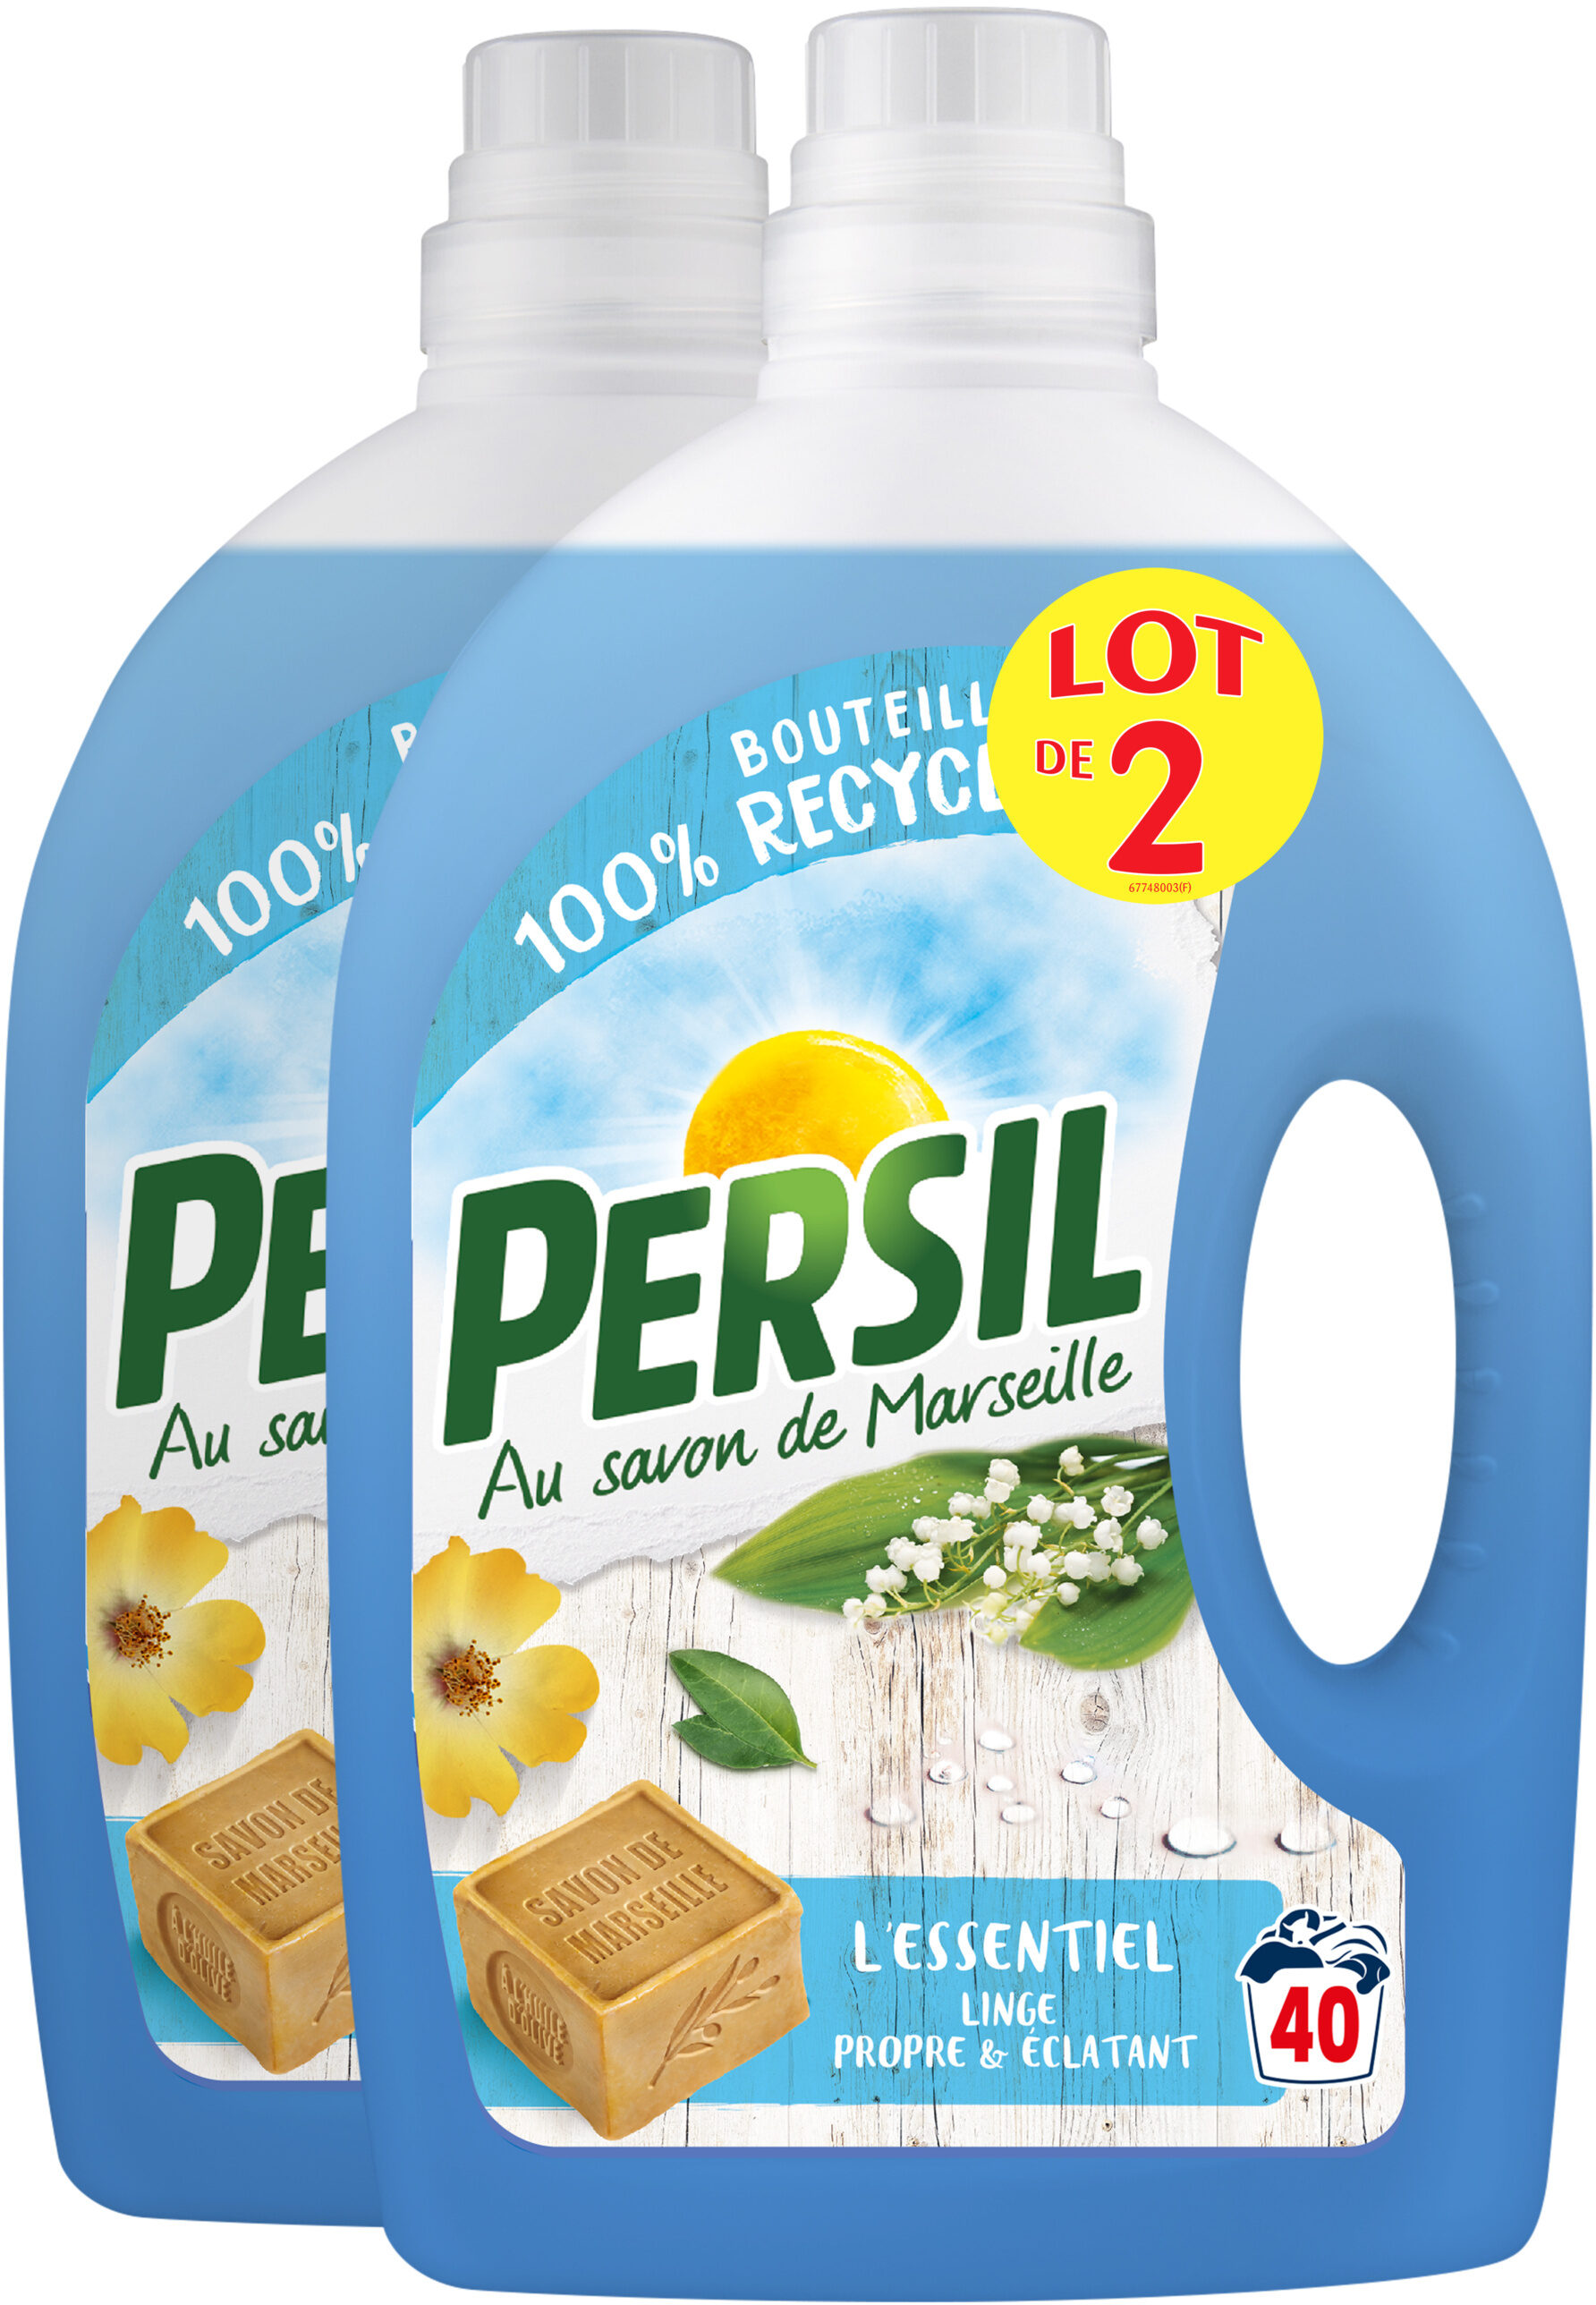 Persil Lessive Liquide l'Essentiel 2l 40 Lavages Lot de 2 - Produit - fr